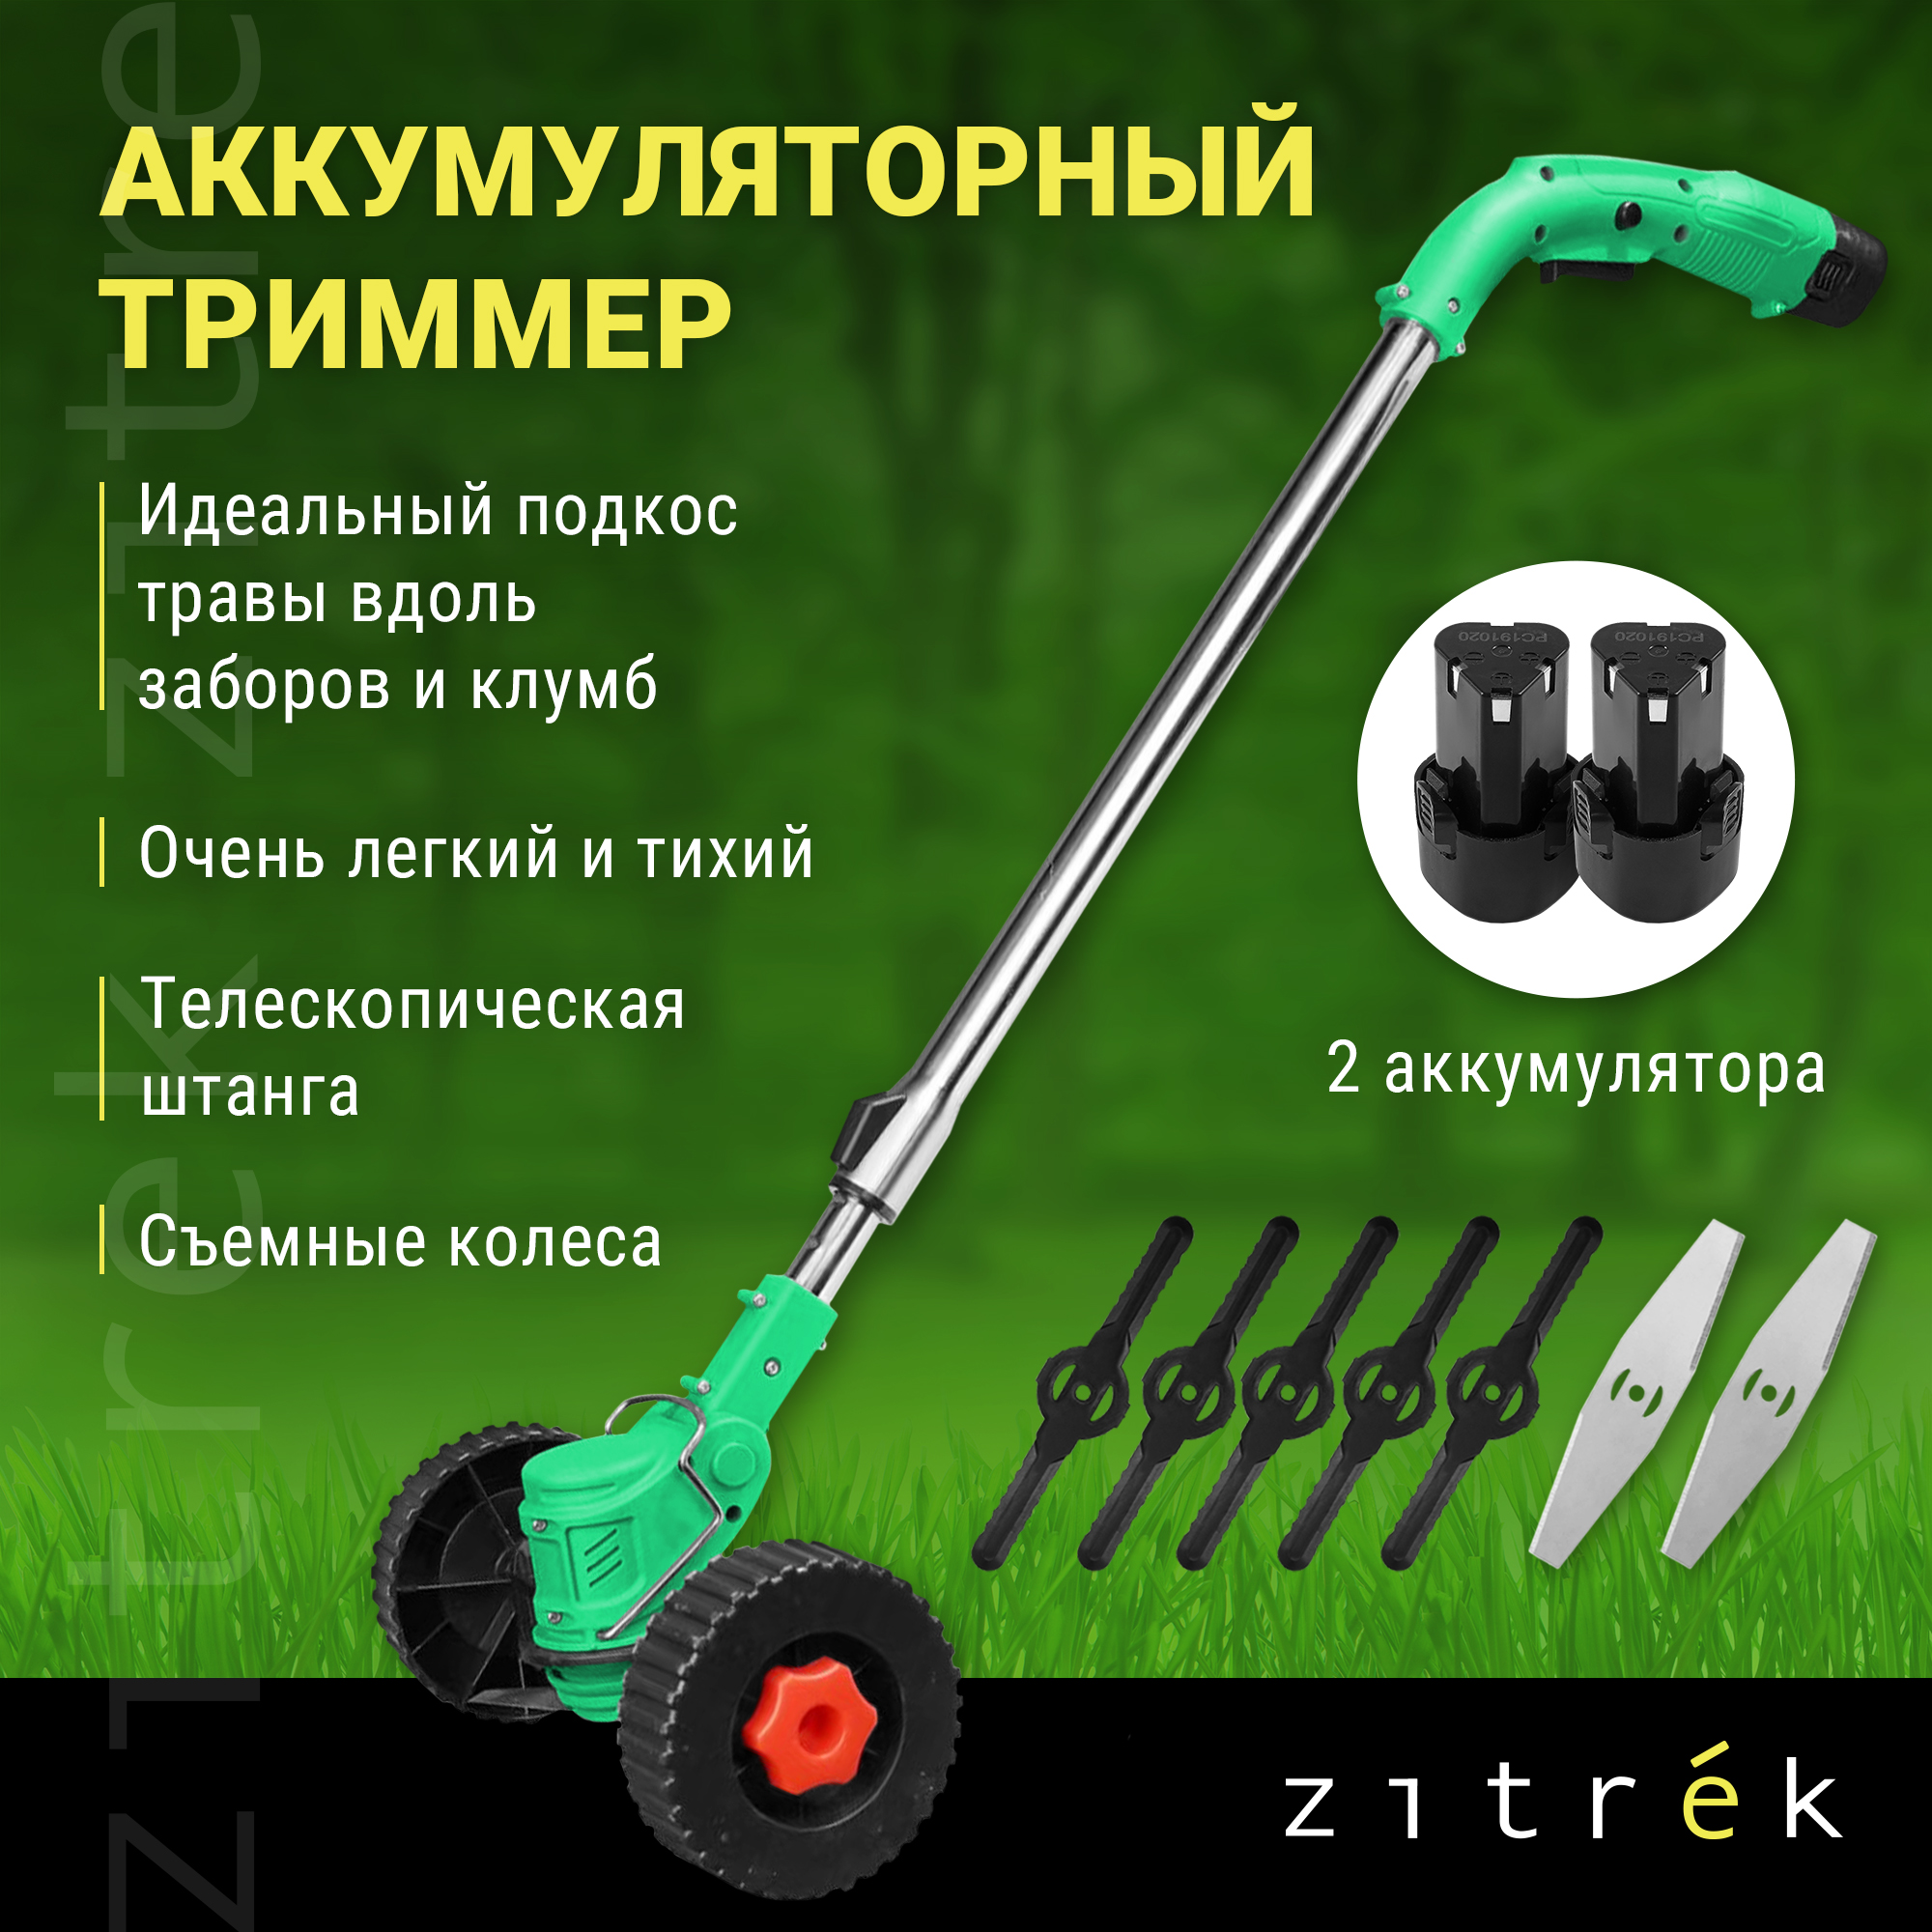 Аккумуляторный триммер-газонокосилка Zitrek GreenCut 12 Pro 082-2004 - купить в Москве, цены на Мегамаркет | 100057302353